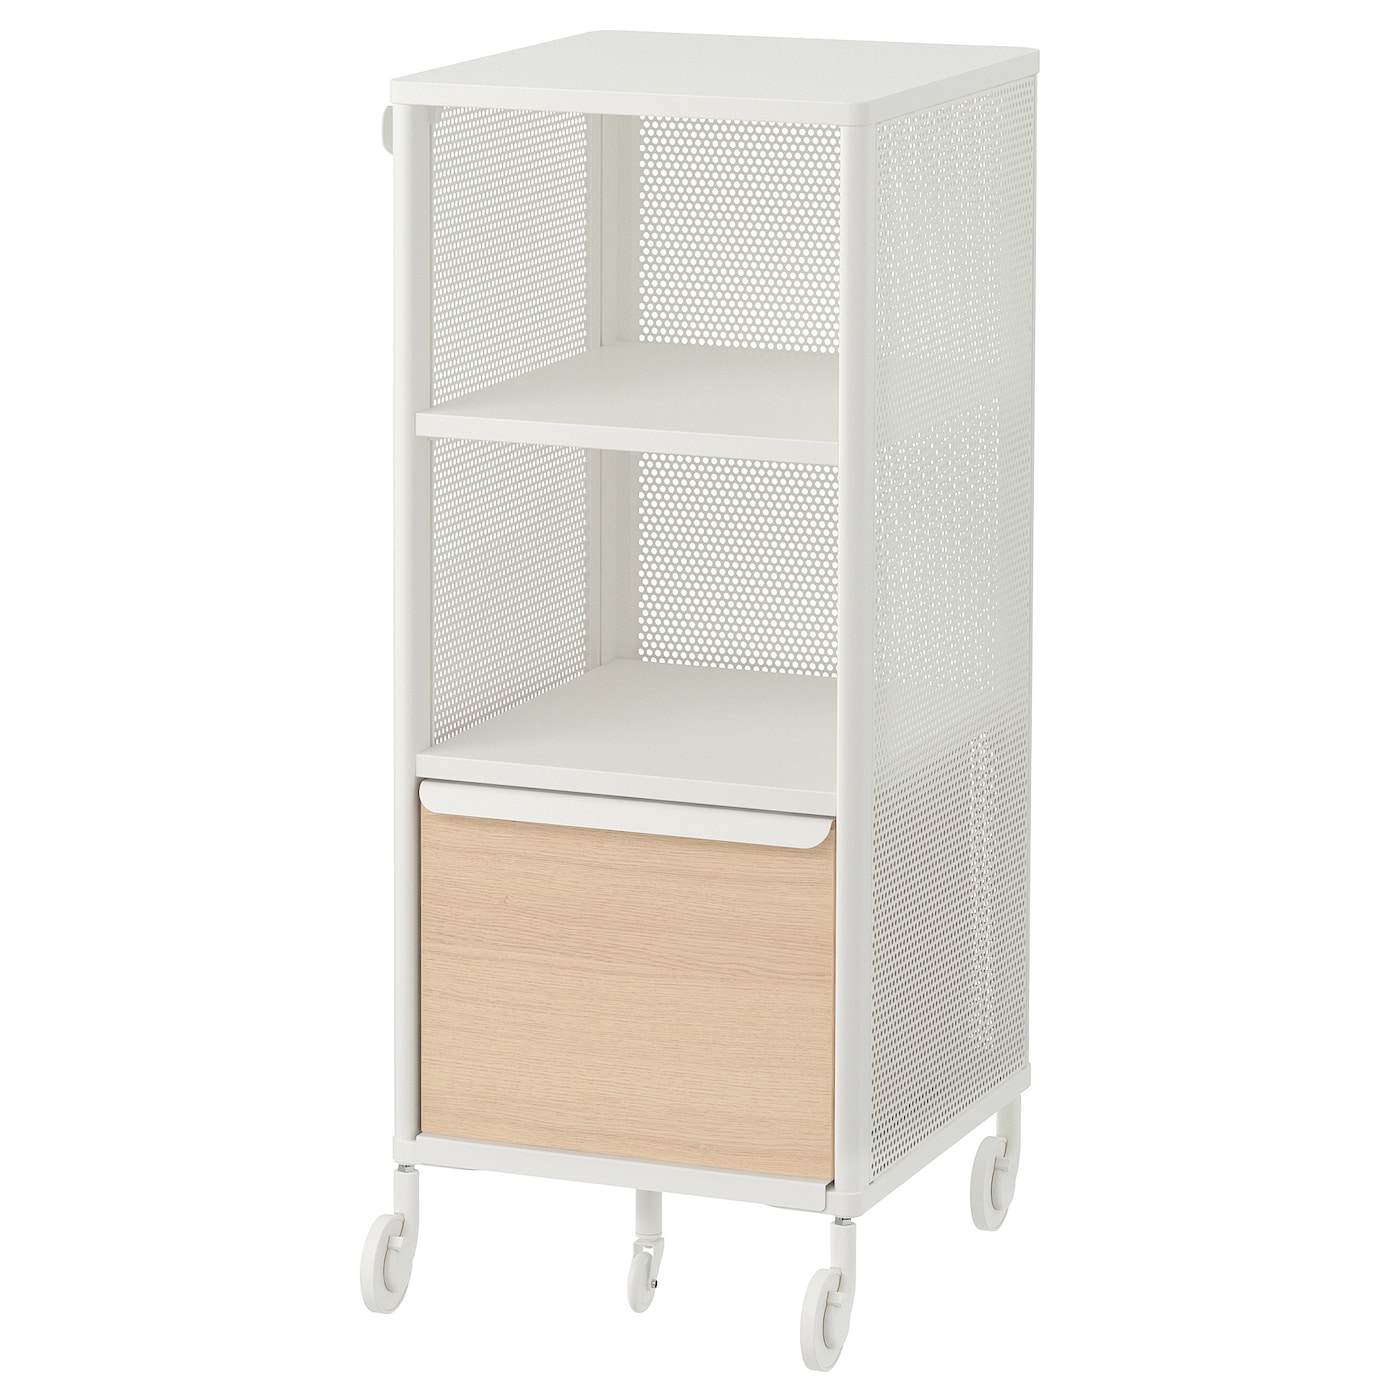 Офисный шкаф - IKEA BEKANT, 41х101см, белый/под беленый дуб, ИКЕА БЕКАНТ